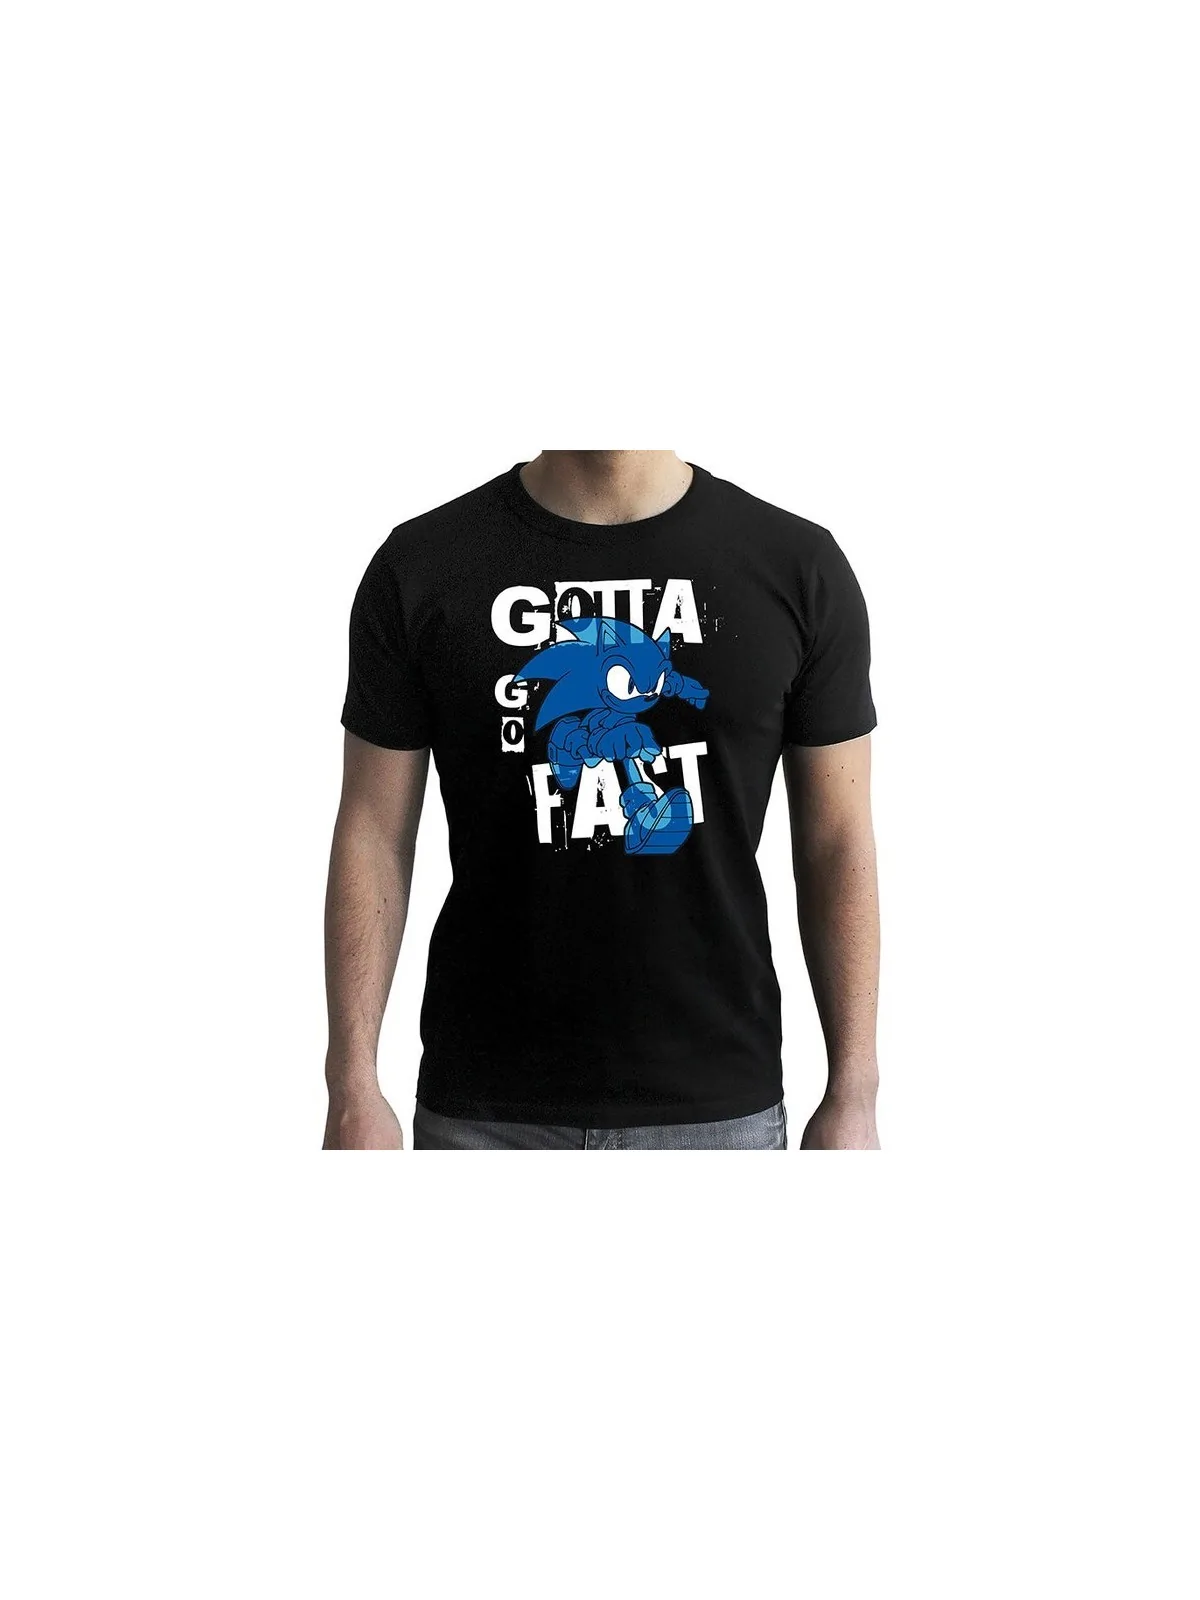 Comprar Camiseta Sonic Gotta Go Fast barato al mejor precio 19,99 € de